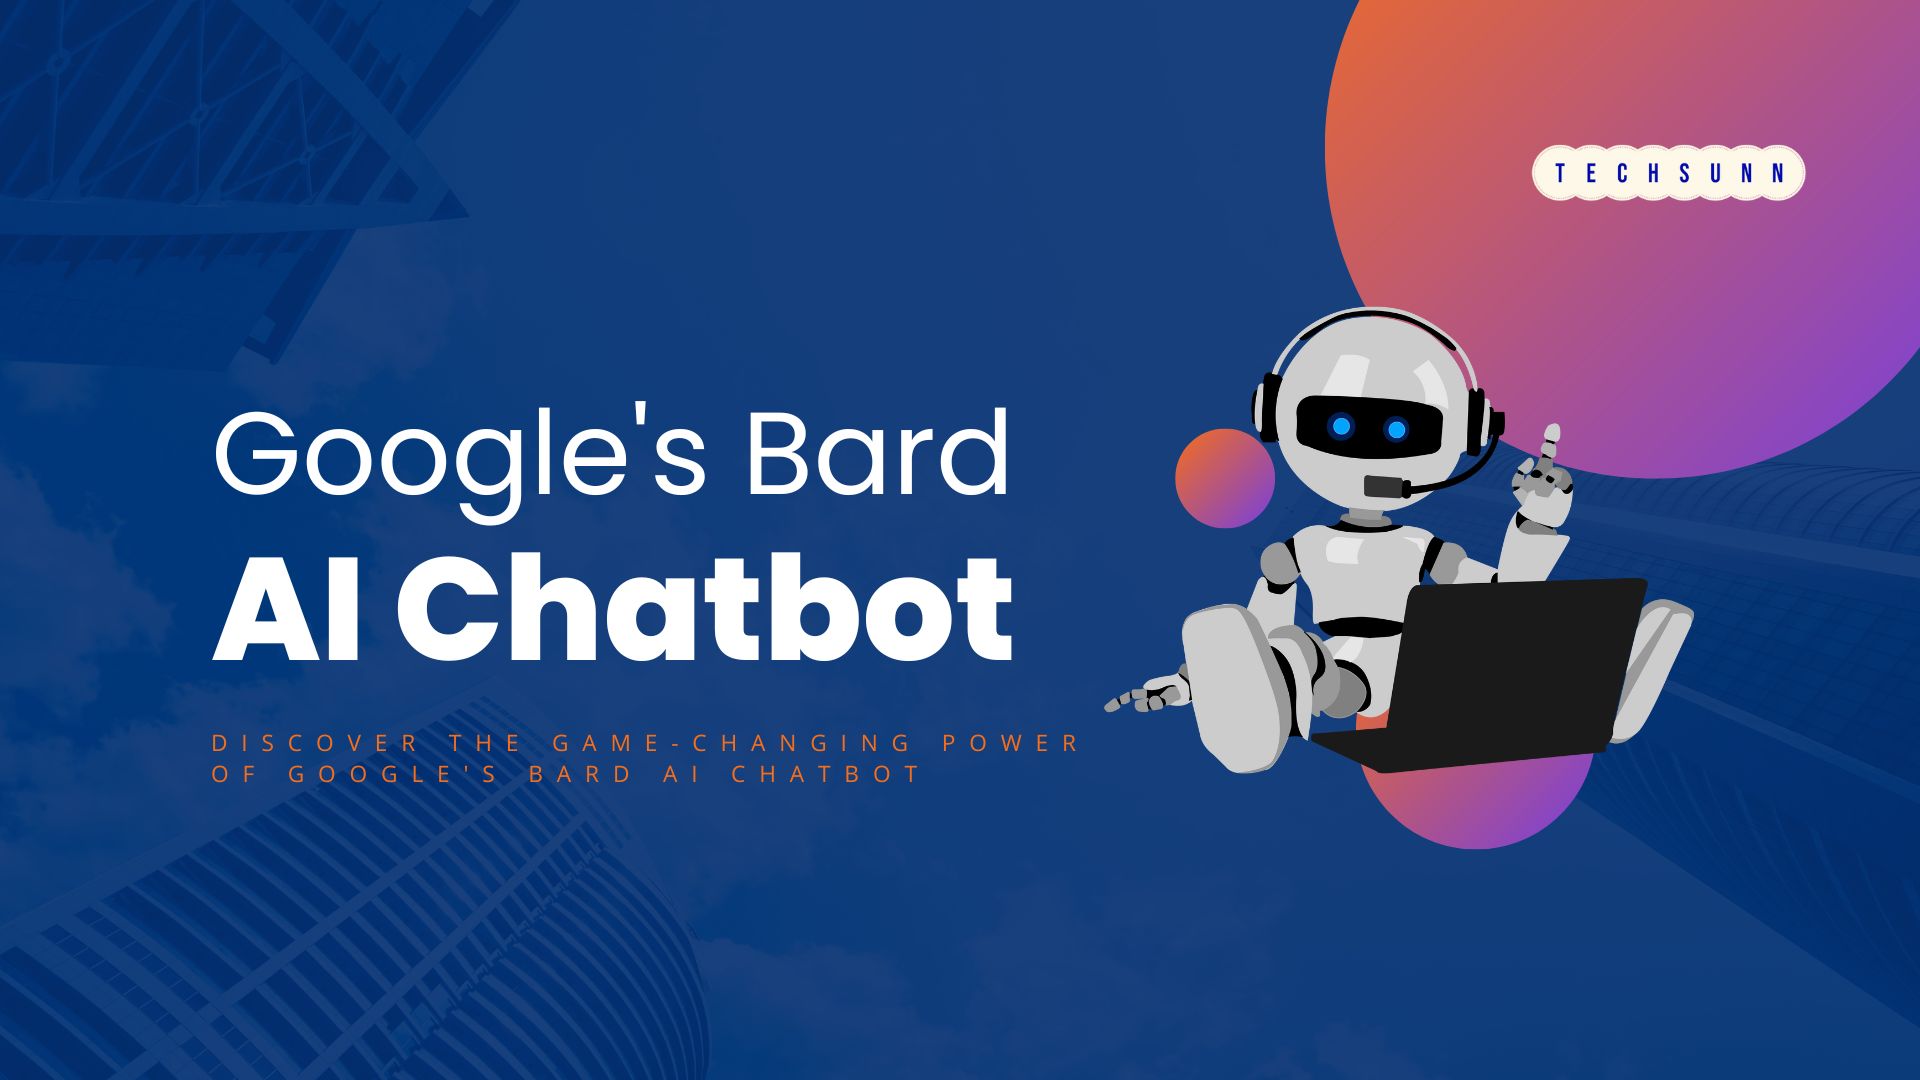 Google's Bard AI Chatbot